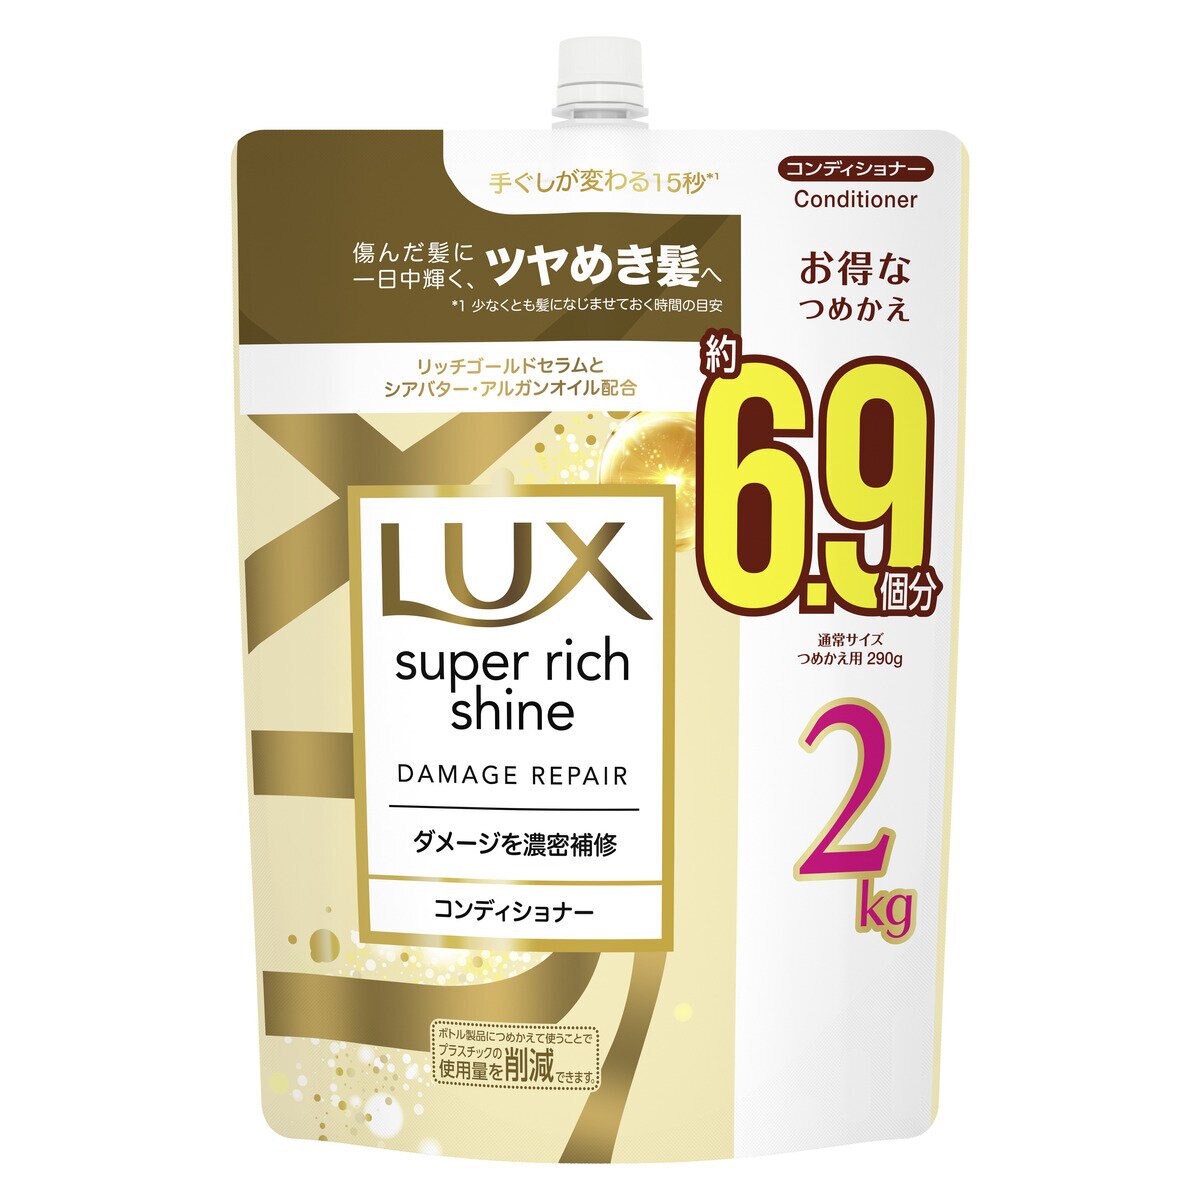 ラックス スーパーリッチシャイン ダメージリペア コンディショナー 詰替え用 2kg | Costco Japan